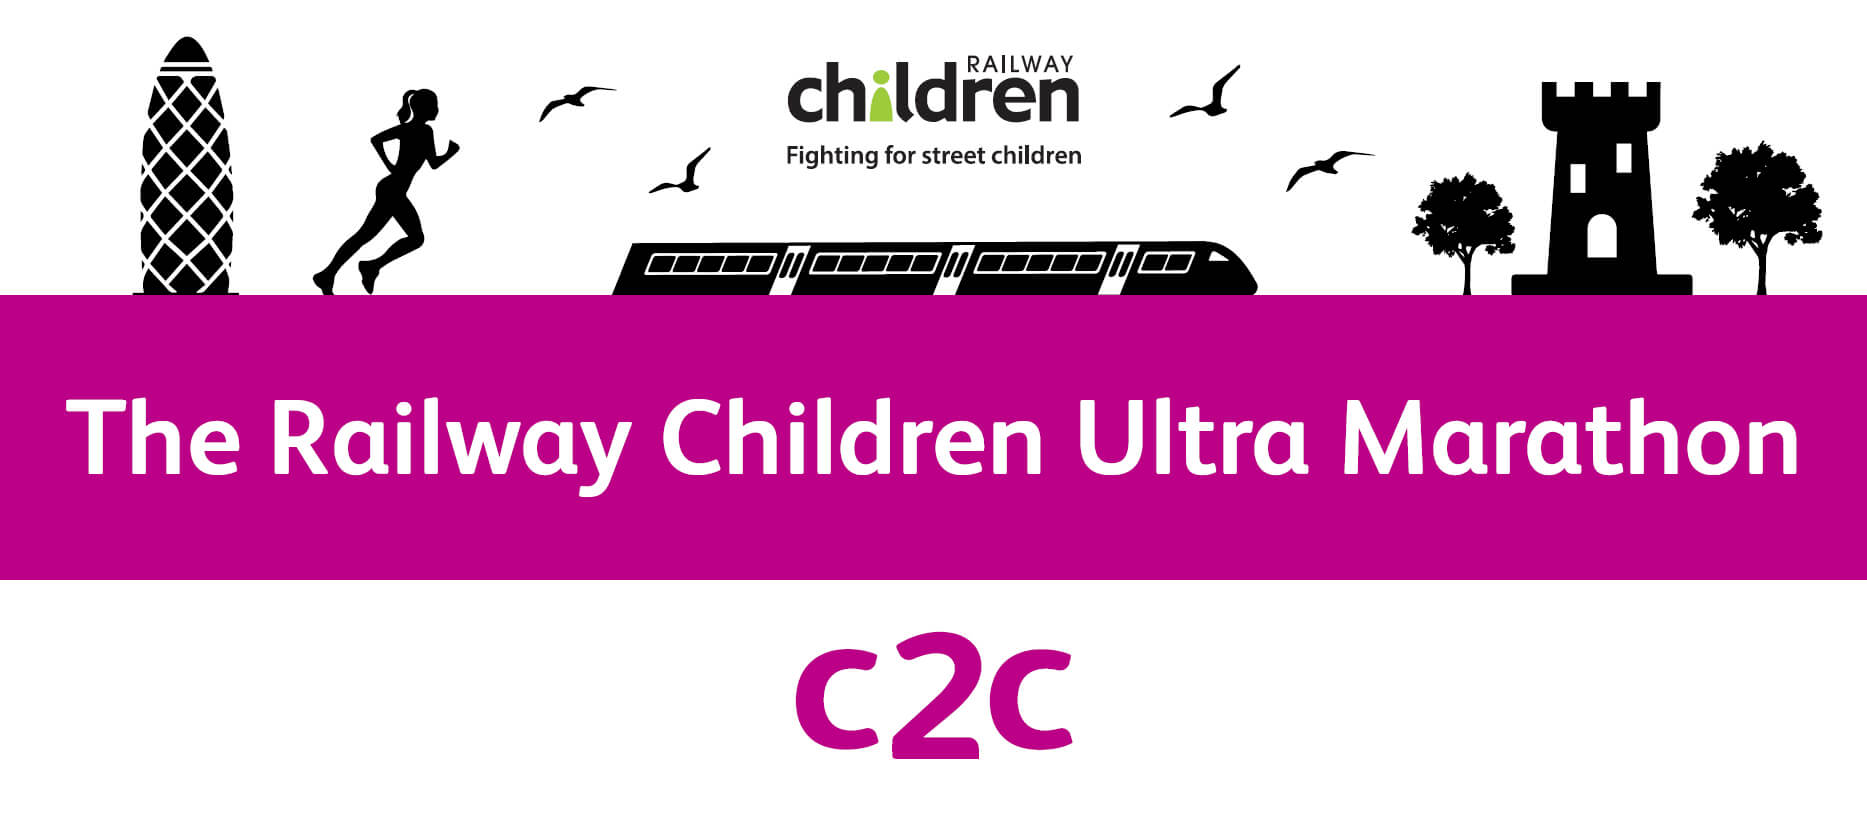 The Railway Children Ultra Marathon